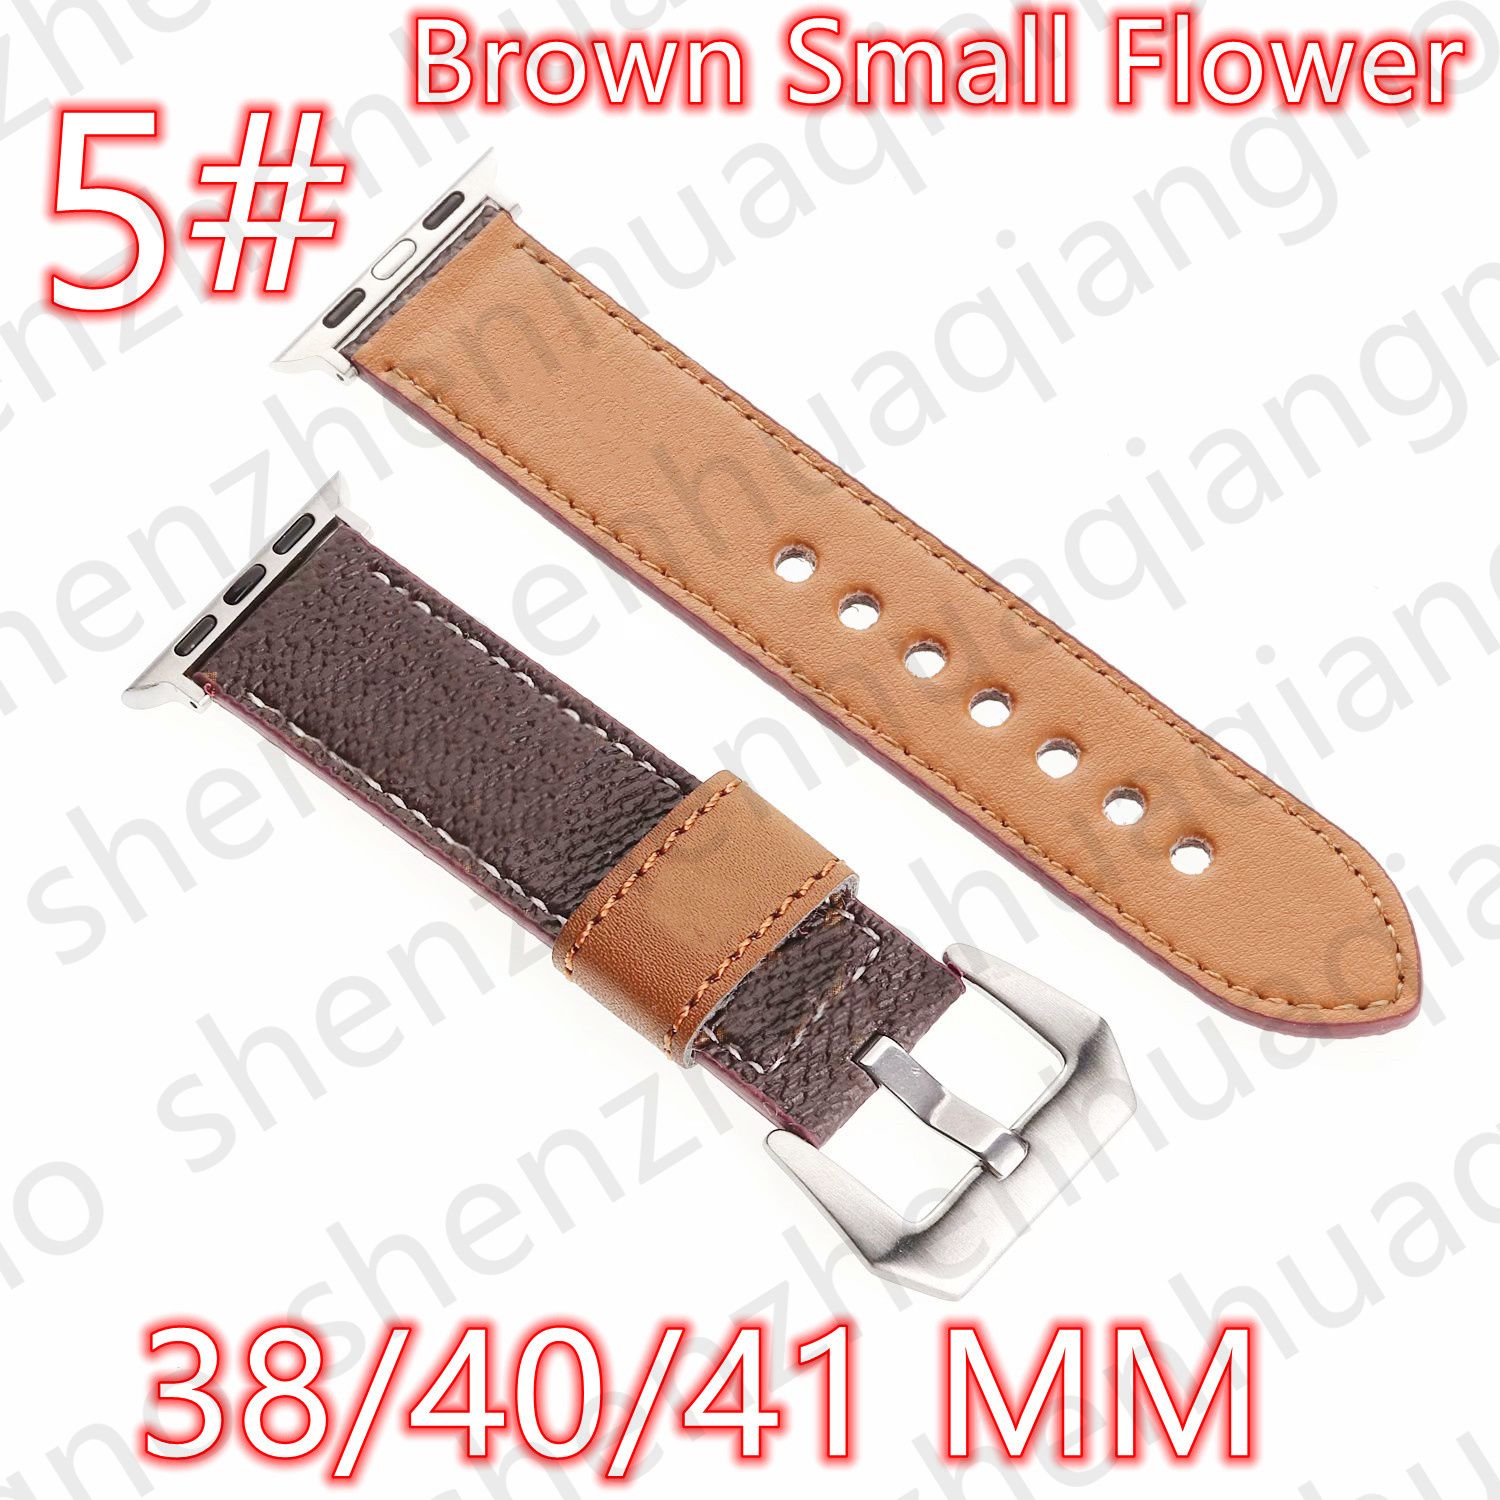 5 # 38/40/41 mm Small Flower V Logo